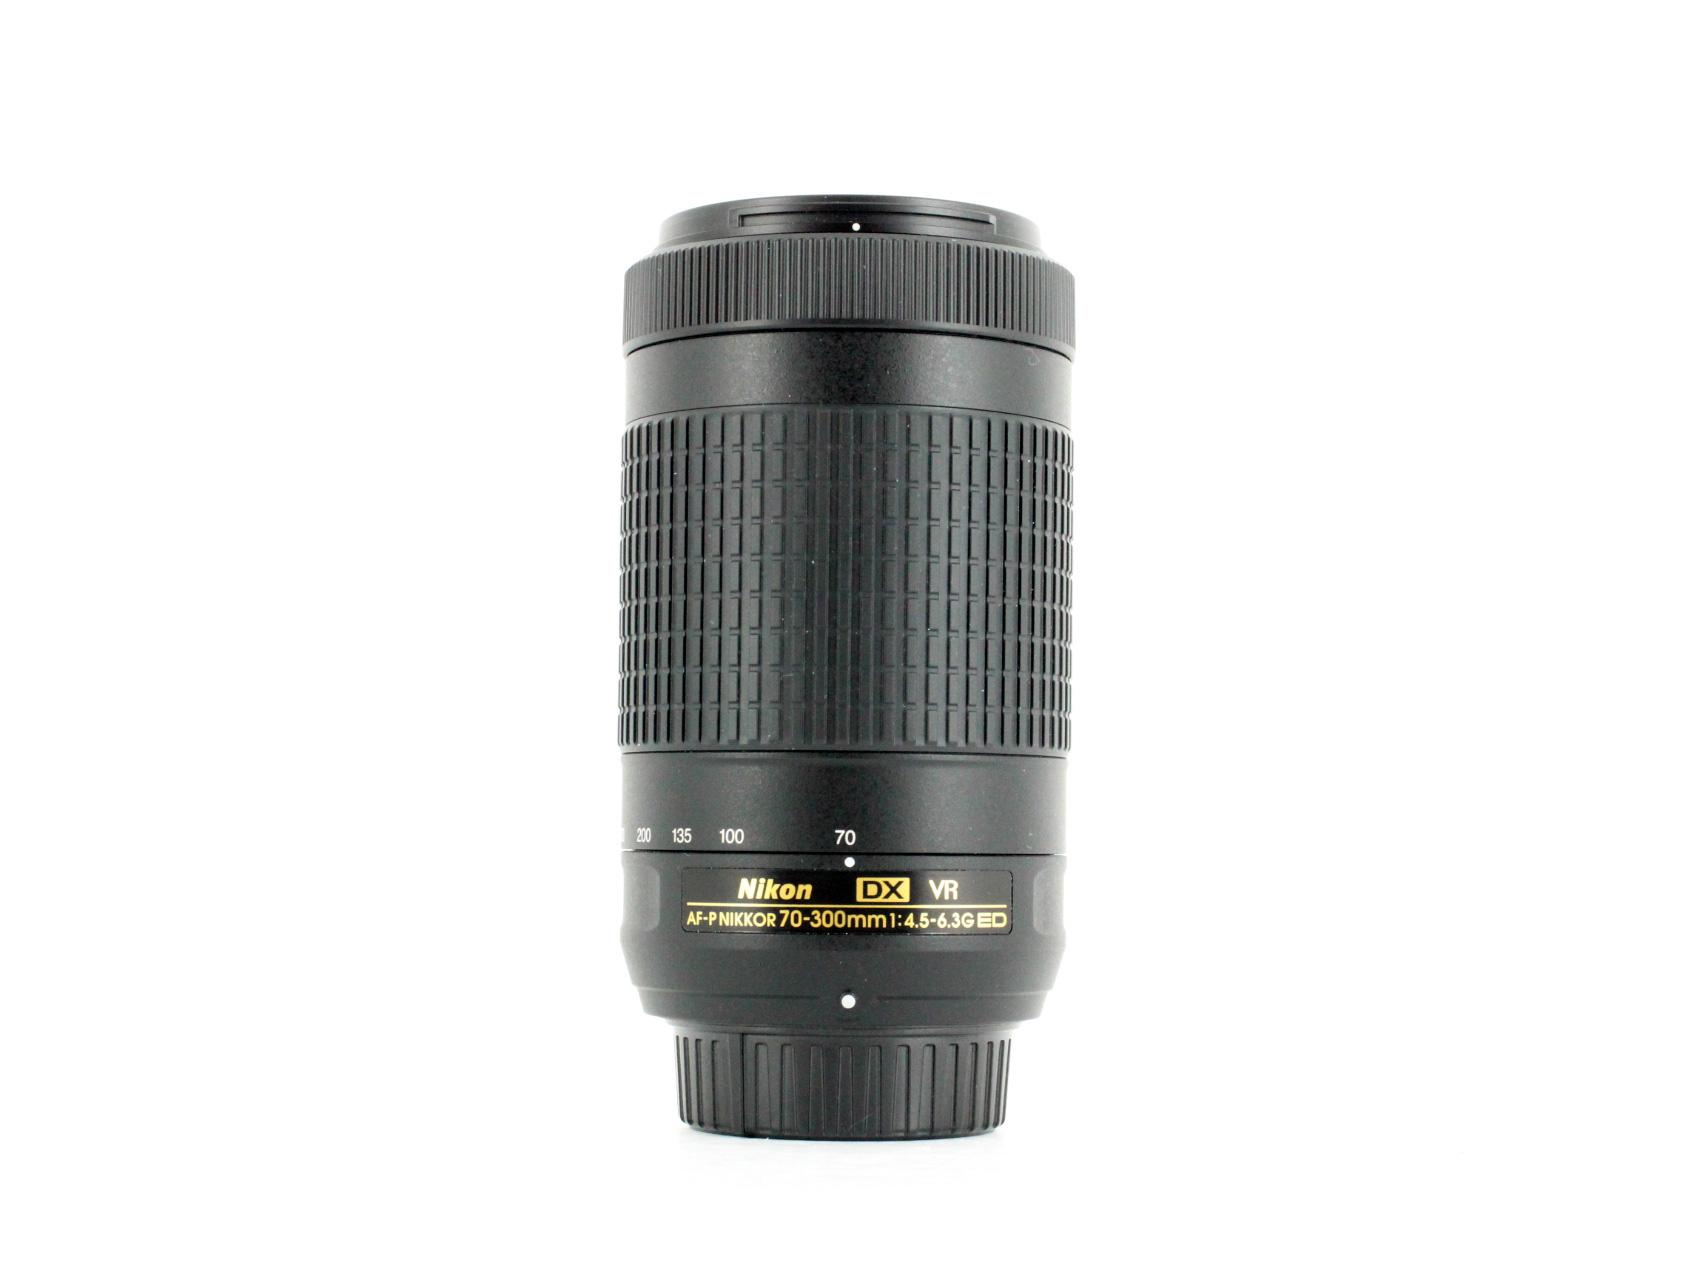 Nikon AF-P Nikkor 70-300mm f4.5-6.3 G ED DX VR Lens Lenses and Cameras